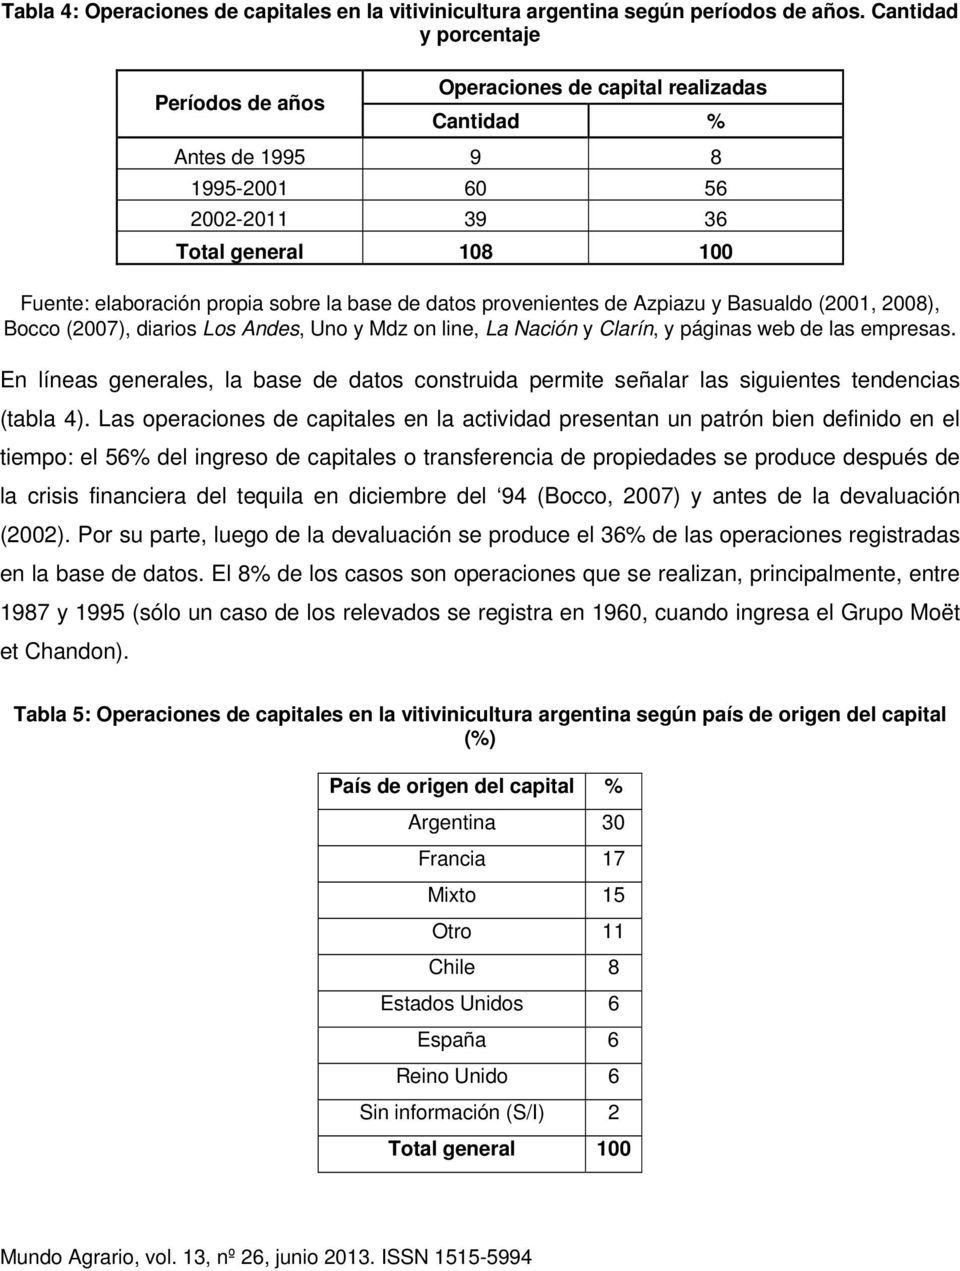 datos provenientes de Azpiazu y Basualdo (2001, 2008), Bocco (2007), diarios Los Andes, Uno y Mdz on line, La Nación y Clarín, y páginas web de las empresas.